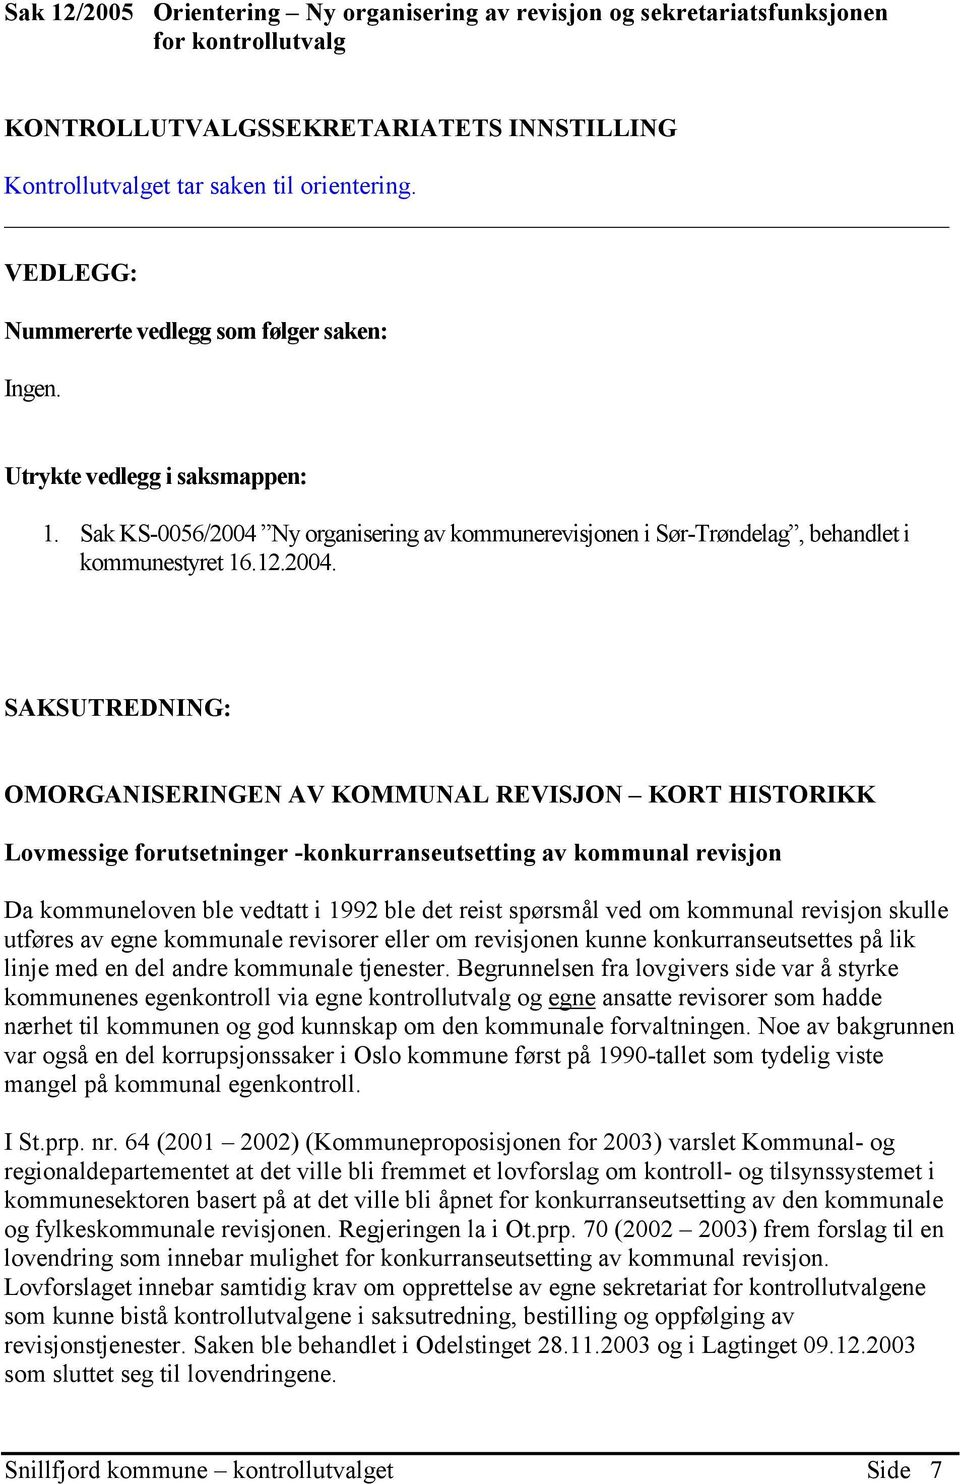 Ny organisering av kommunerevisjonen i Sør-Trøndelag, behandlet i kommunestyret 16.12.2004.